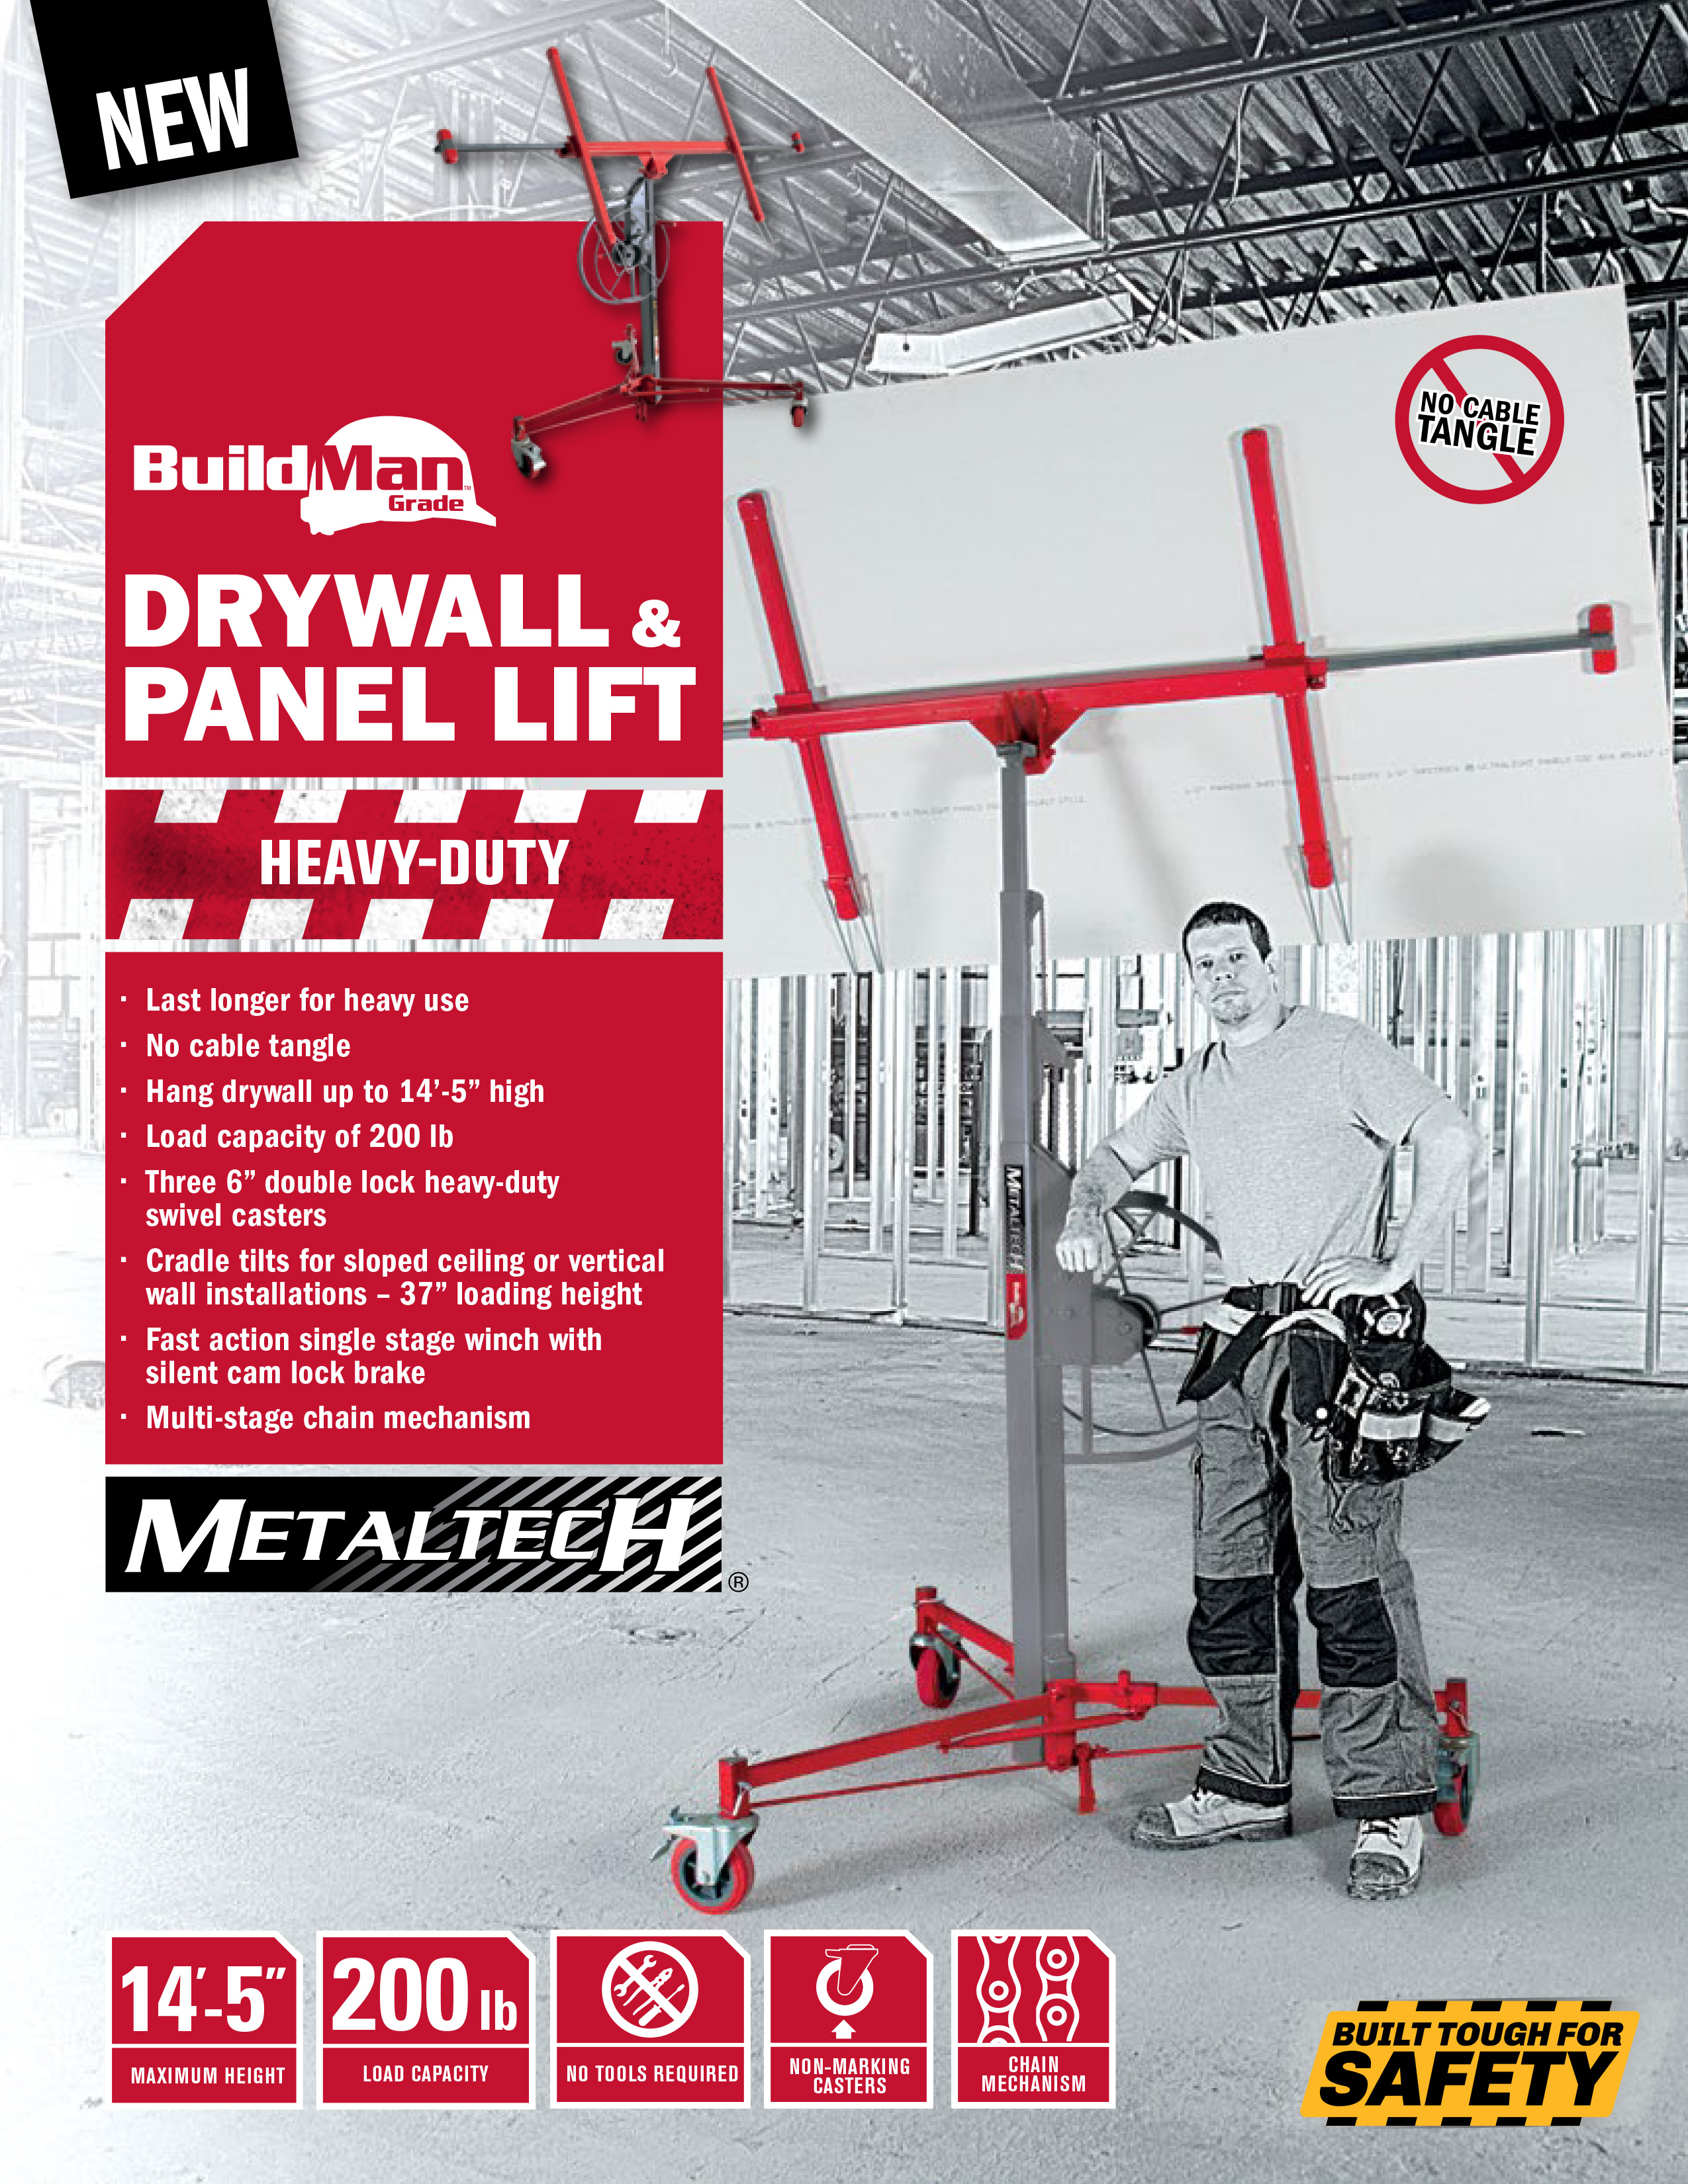 metaltech-drywall-and-panel-lift-buildman-1.jpg